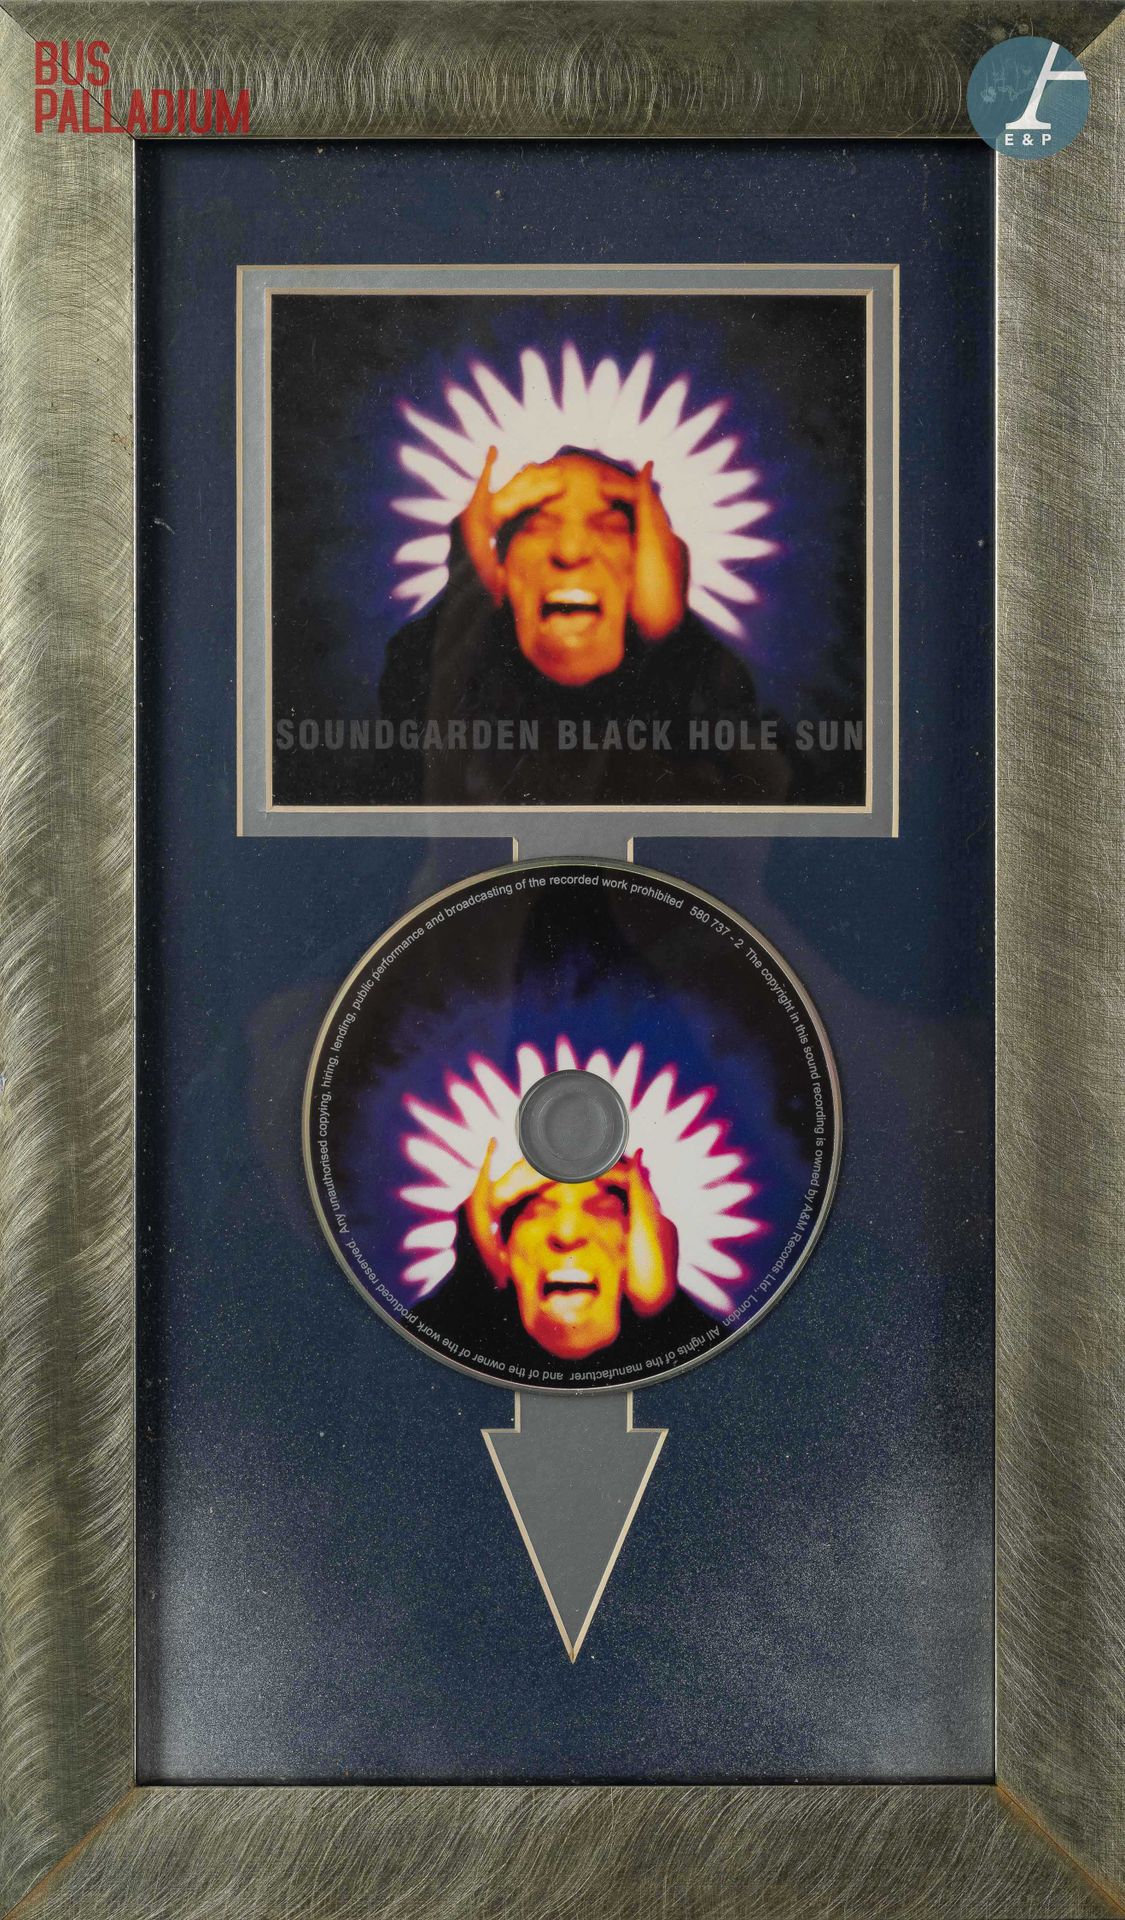 Null Aus dem Konzertsaal des Bus Palladiums



CD-Platte der Band Soundgarden, A&hellip;